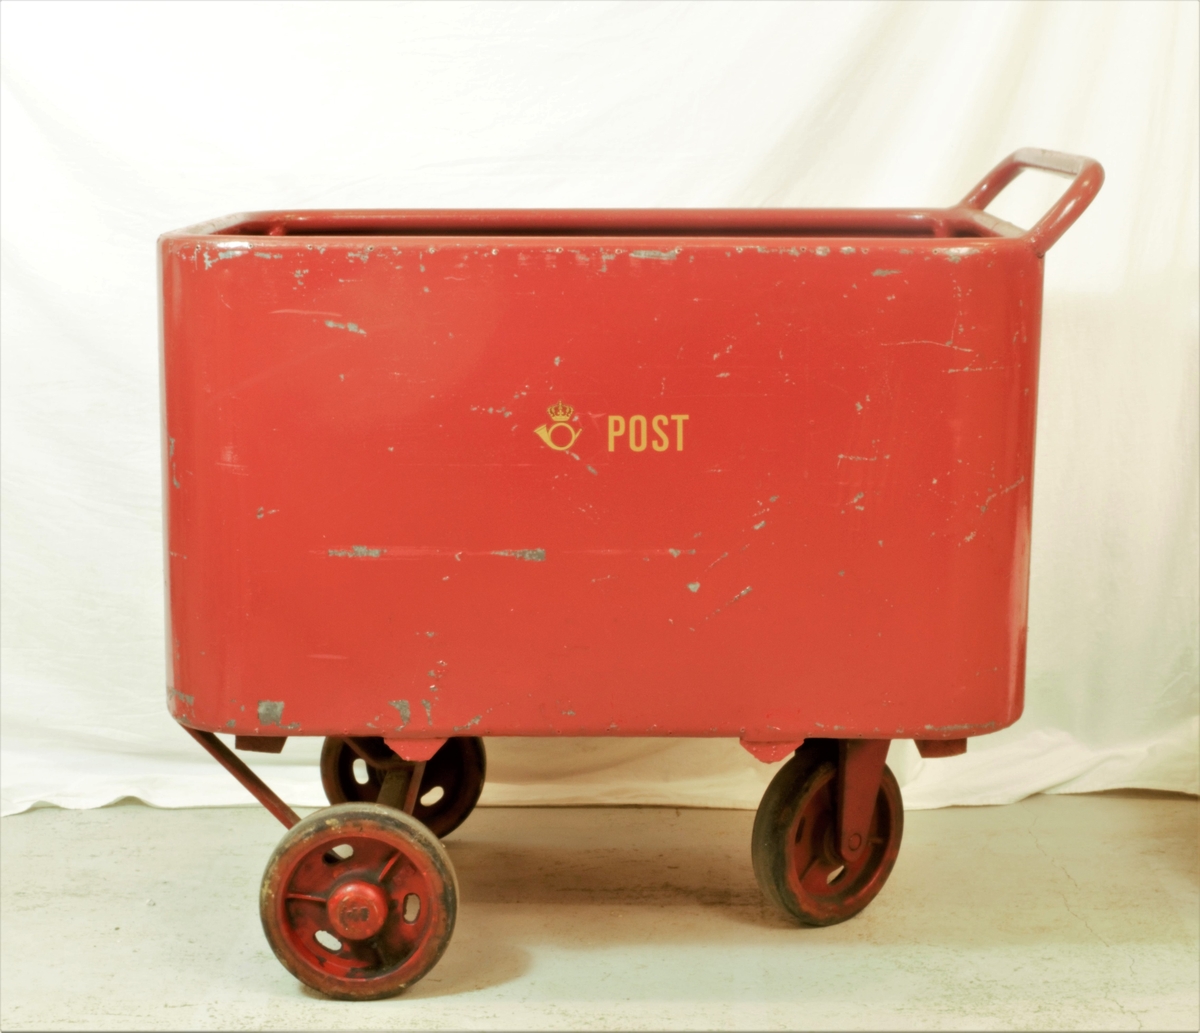 Rød postvogn med hvit logo. Selve vognen er i metall med tre gummibelagte hjul. Det er treplanker i bunnen av vognen.